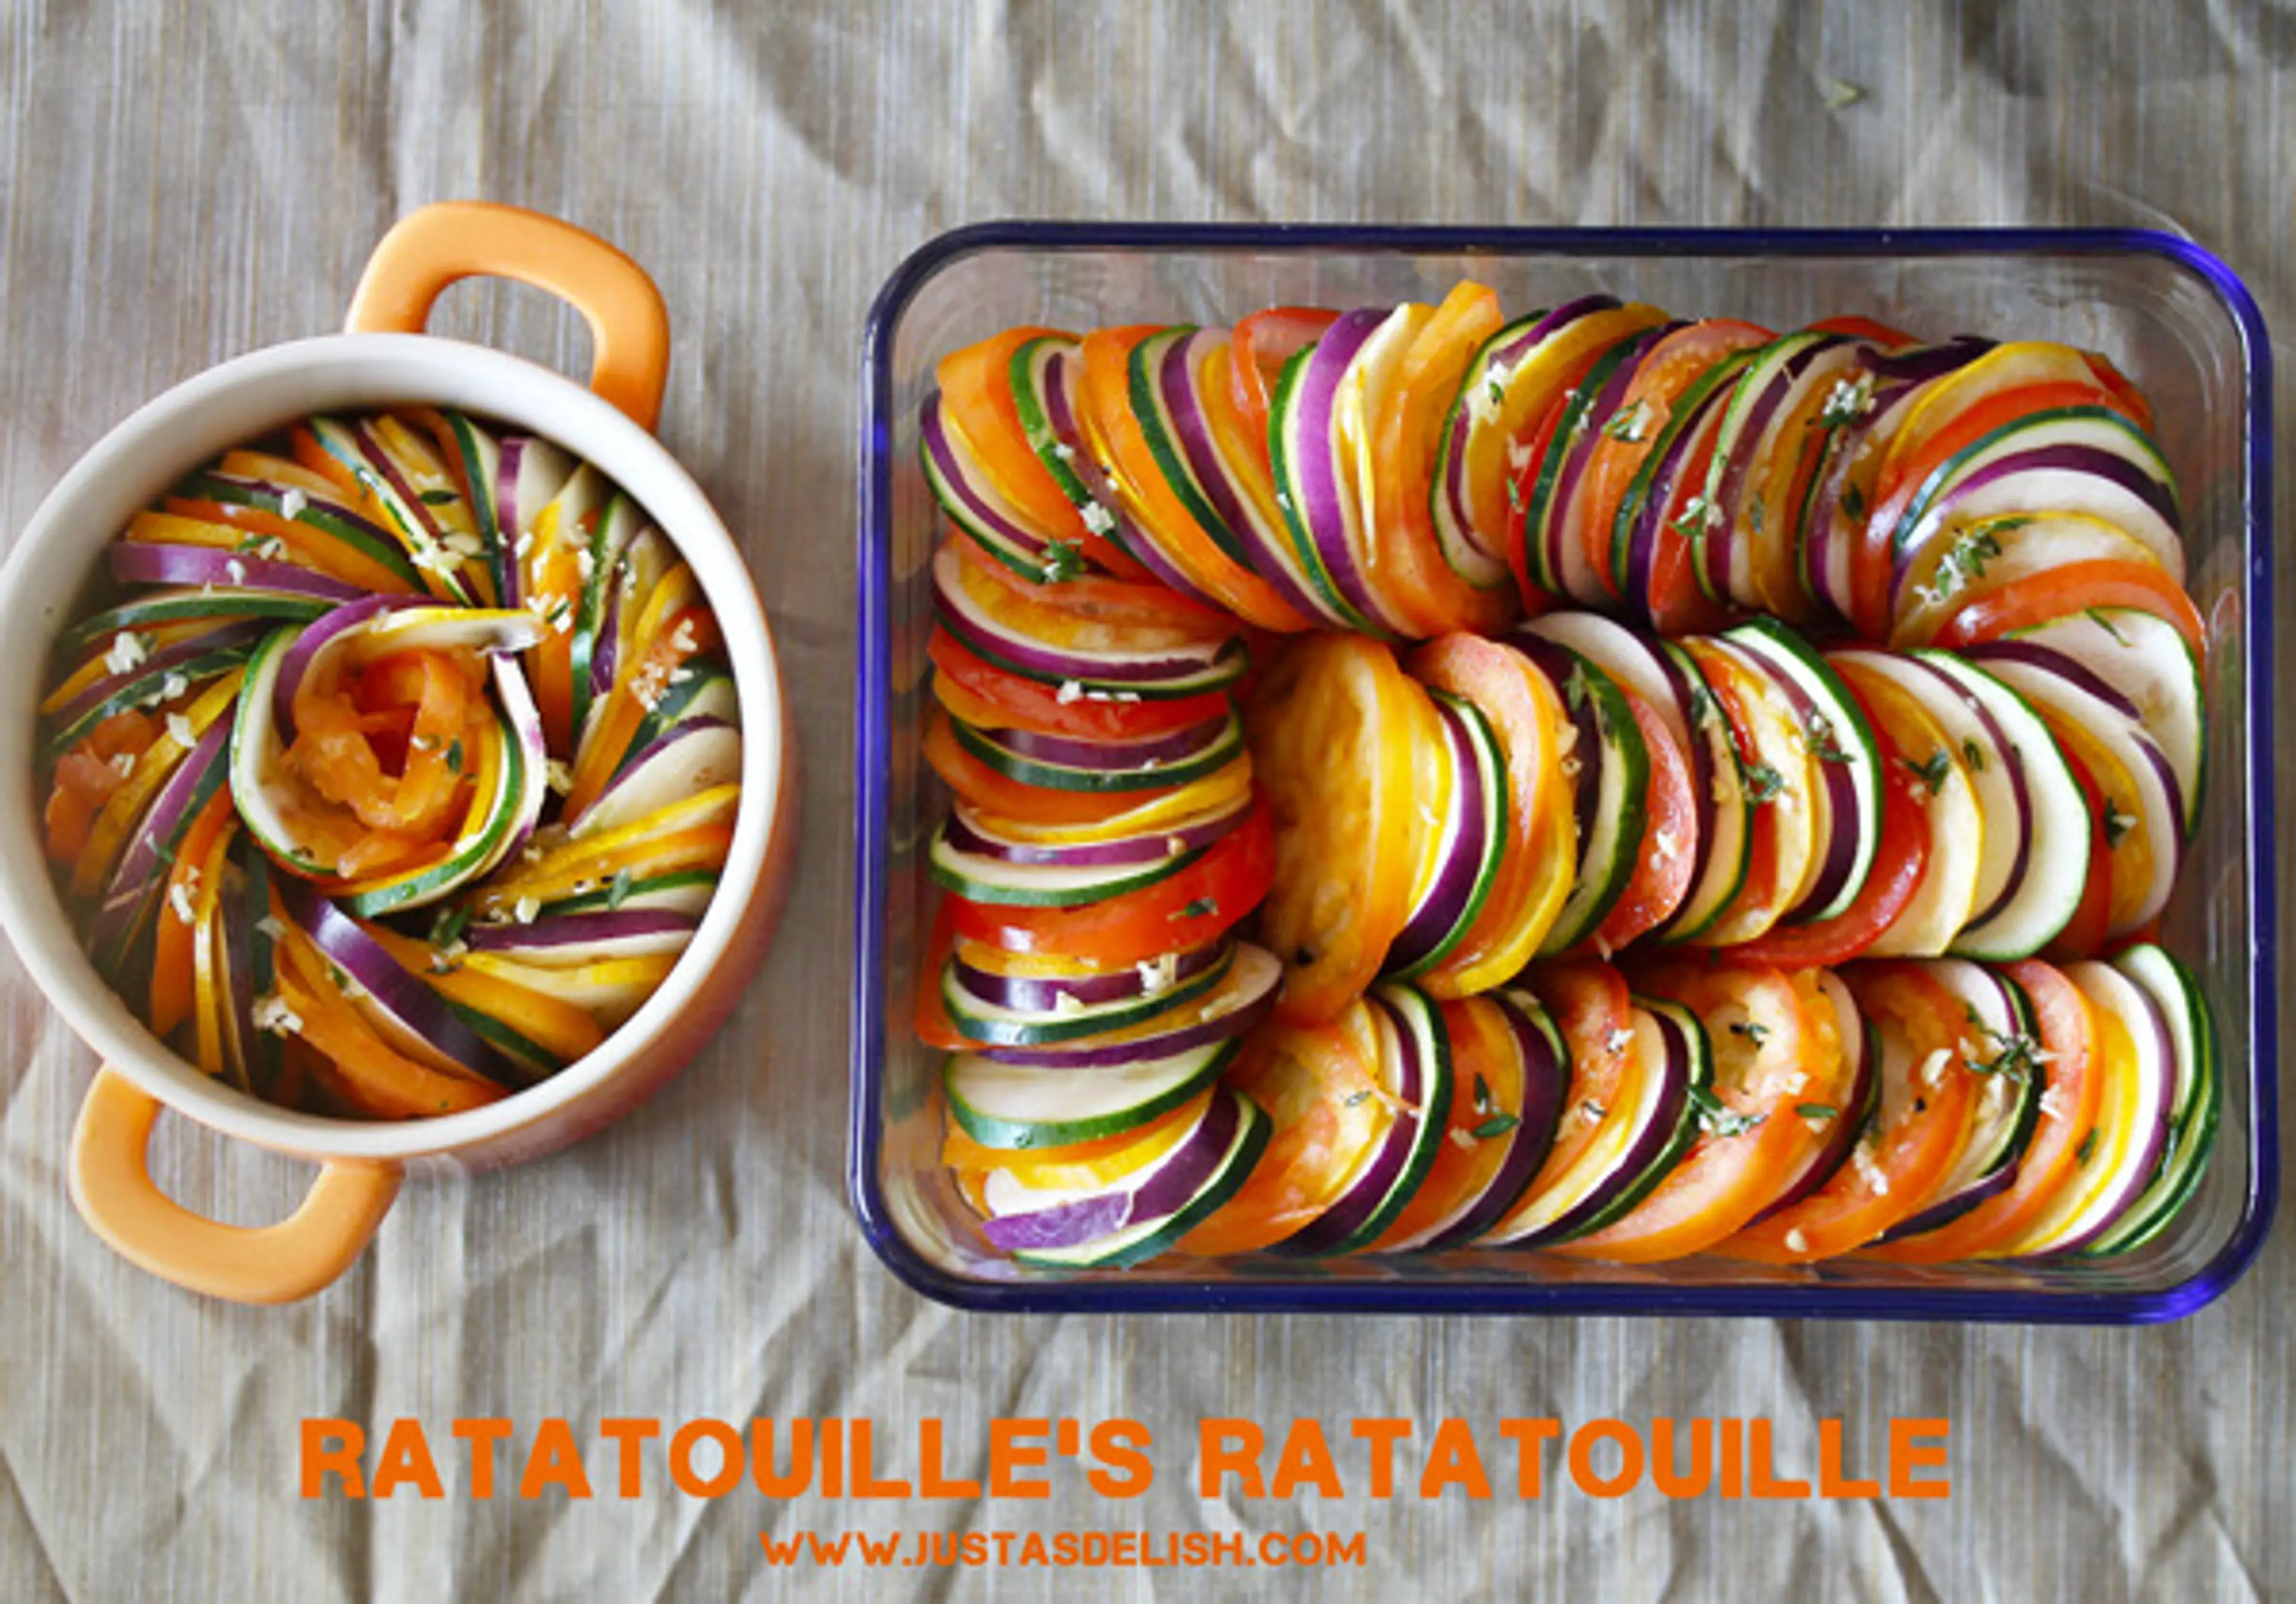 Ratatouille's Ratatouile (Thomas Keller's Confit Byaldi)